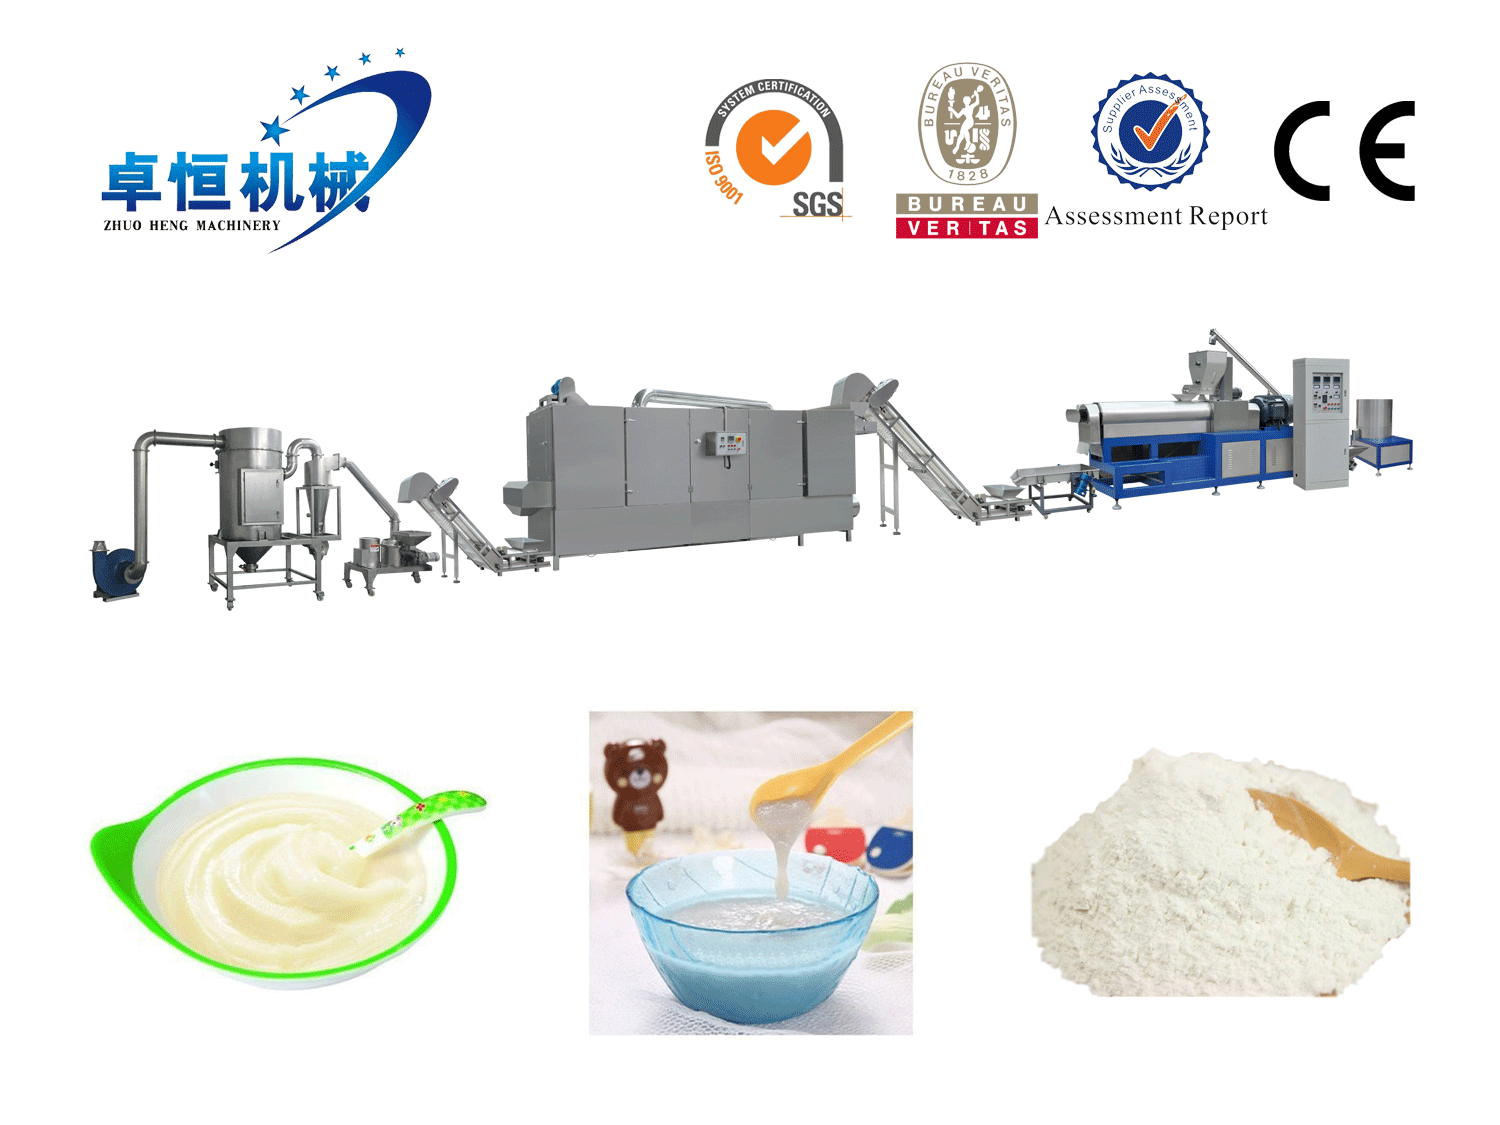 营养米粉生产线